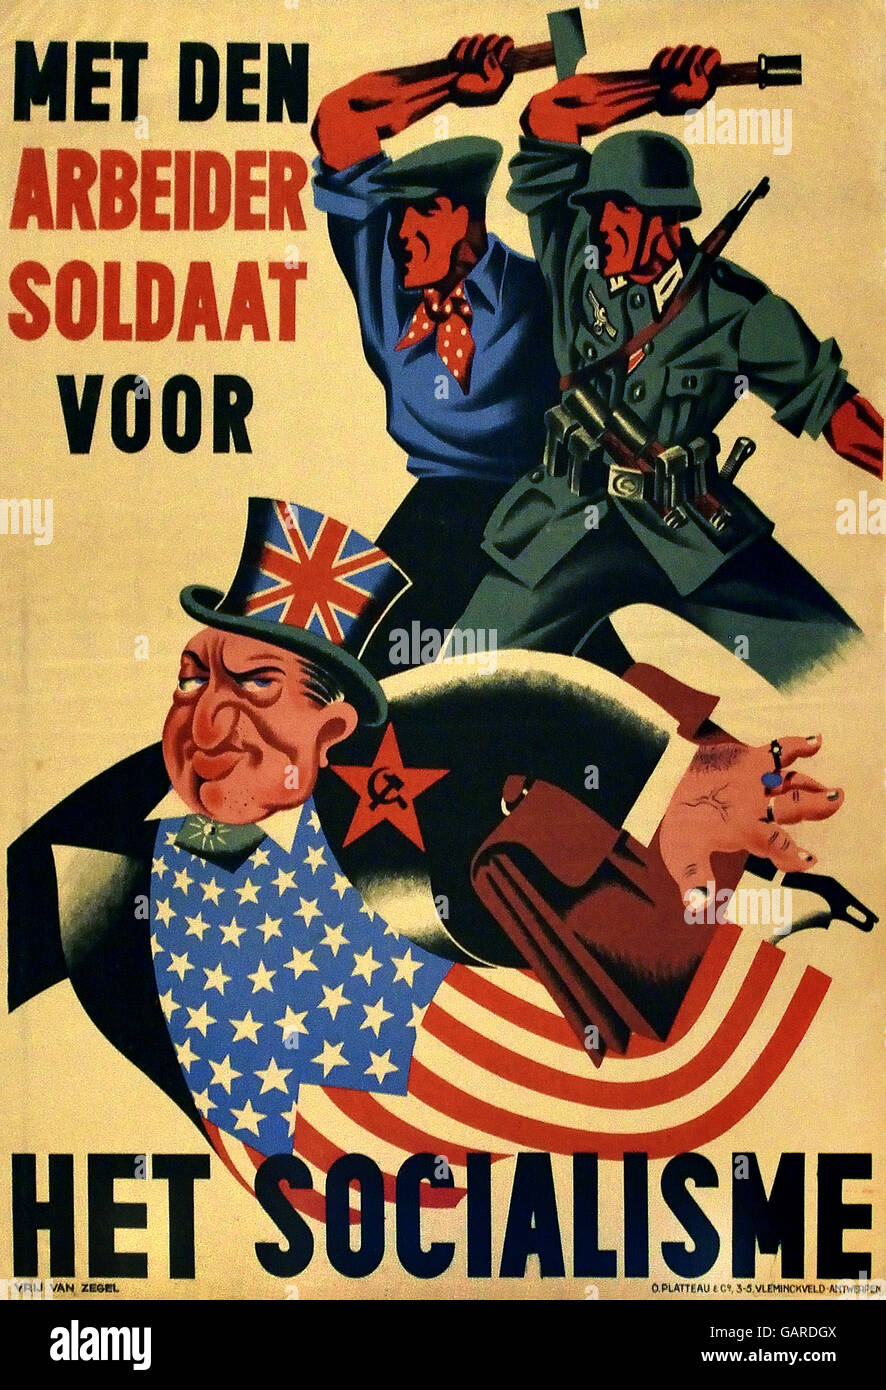 Erfüllt Den Arbeider Soldaat Voor Het Socialisme - Worker Soldat für Sozialismus der nationalsozialistischen Propaganda Poster in Belgien 1943 / 44 Nazi-belgischen Stockfoto